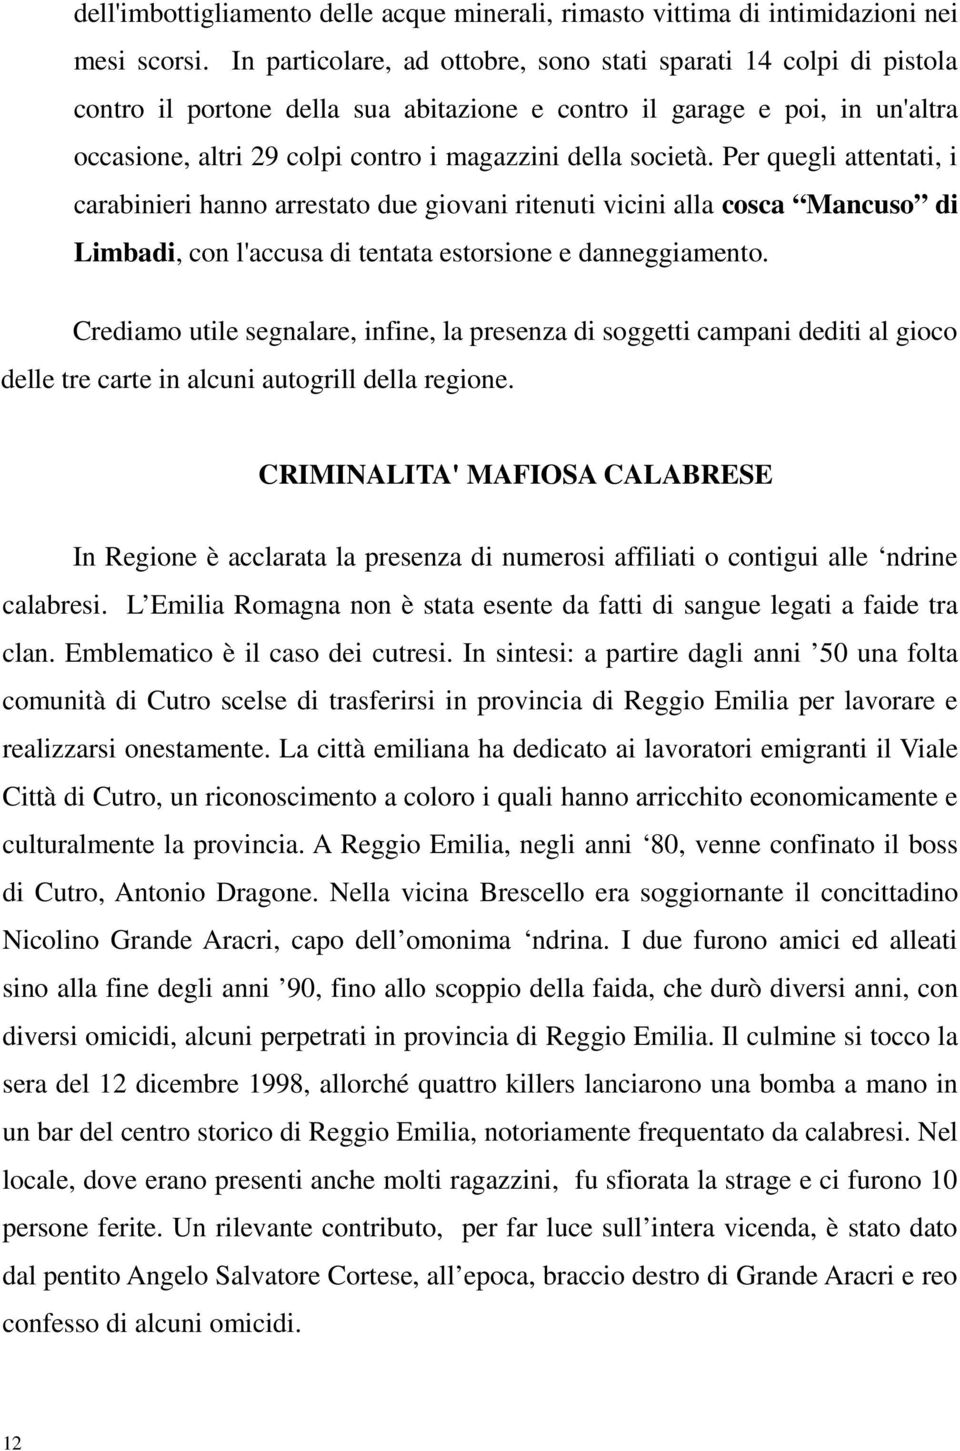 società. Per quegli attentati, i carabinieri hanno arrestato due giovani ritenuti vicini alla cosca Mancuso di Limbadi, con l'accusa di tentata estorsione e danneggiamento.